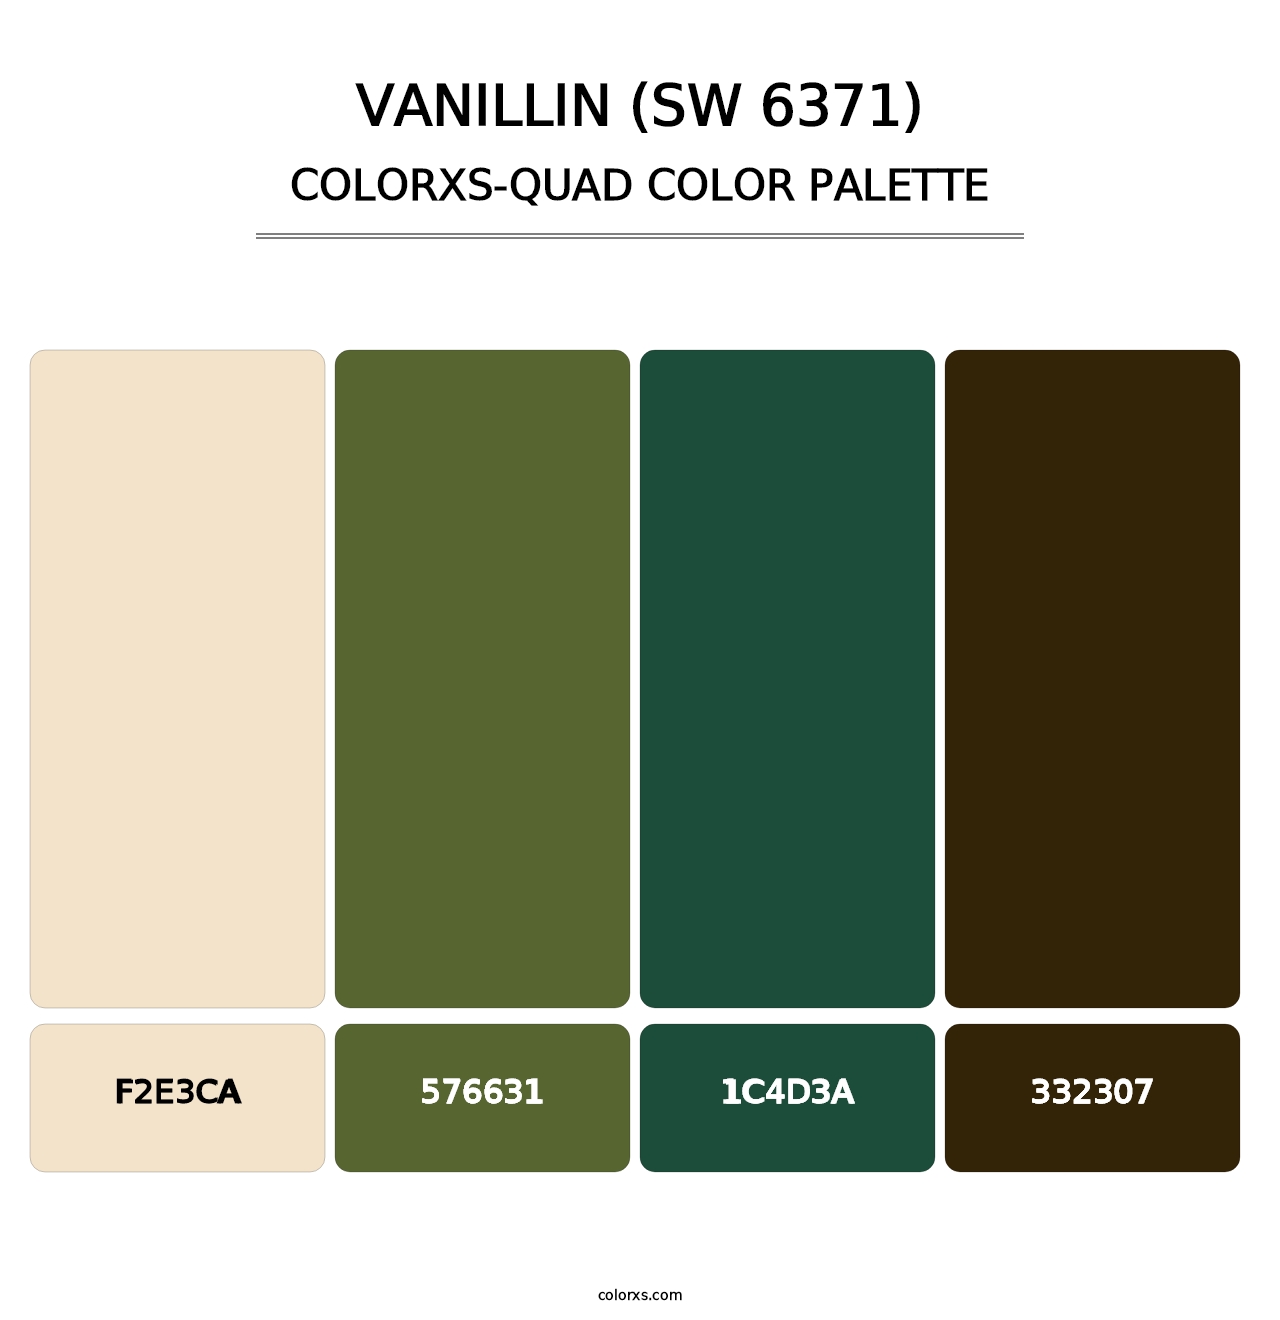 Vanillin (SW 6371) - Colorxs Quad Palette